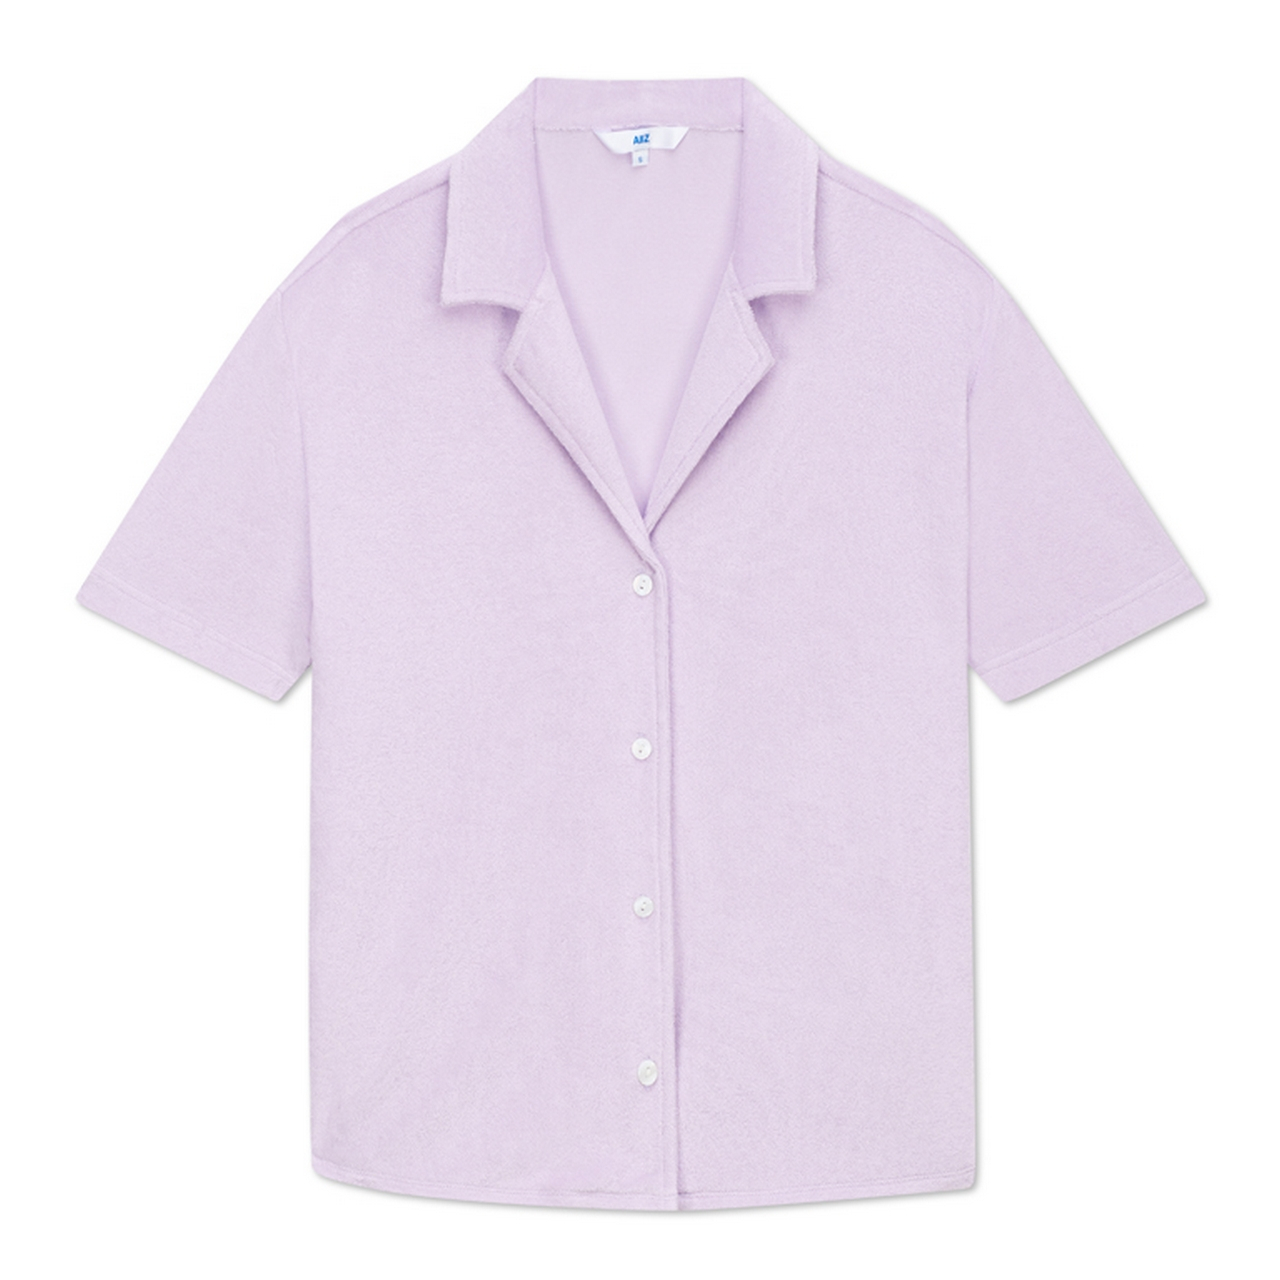 AIIZ (เอ ทู แซด) - เสื้อเชิ้ตแขนสั้นผู้หญิงคอเสื้อทรงรีสอร์ท ผ้าขนหนูสีพื้น Women's Towel Terry Resort Shirtsn